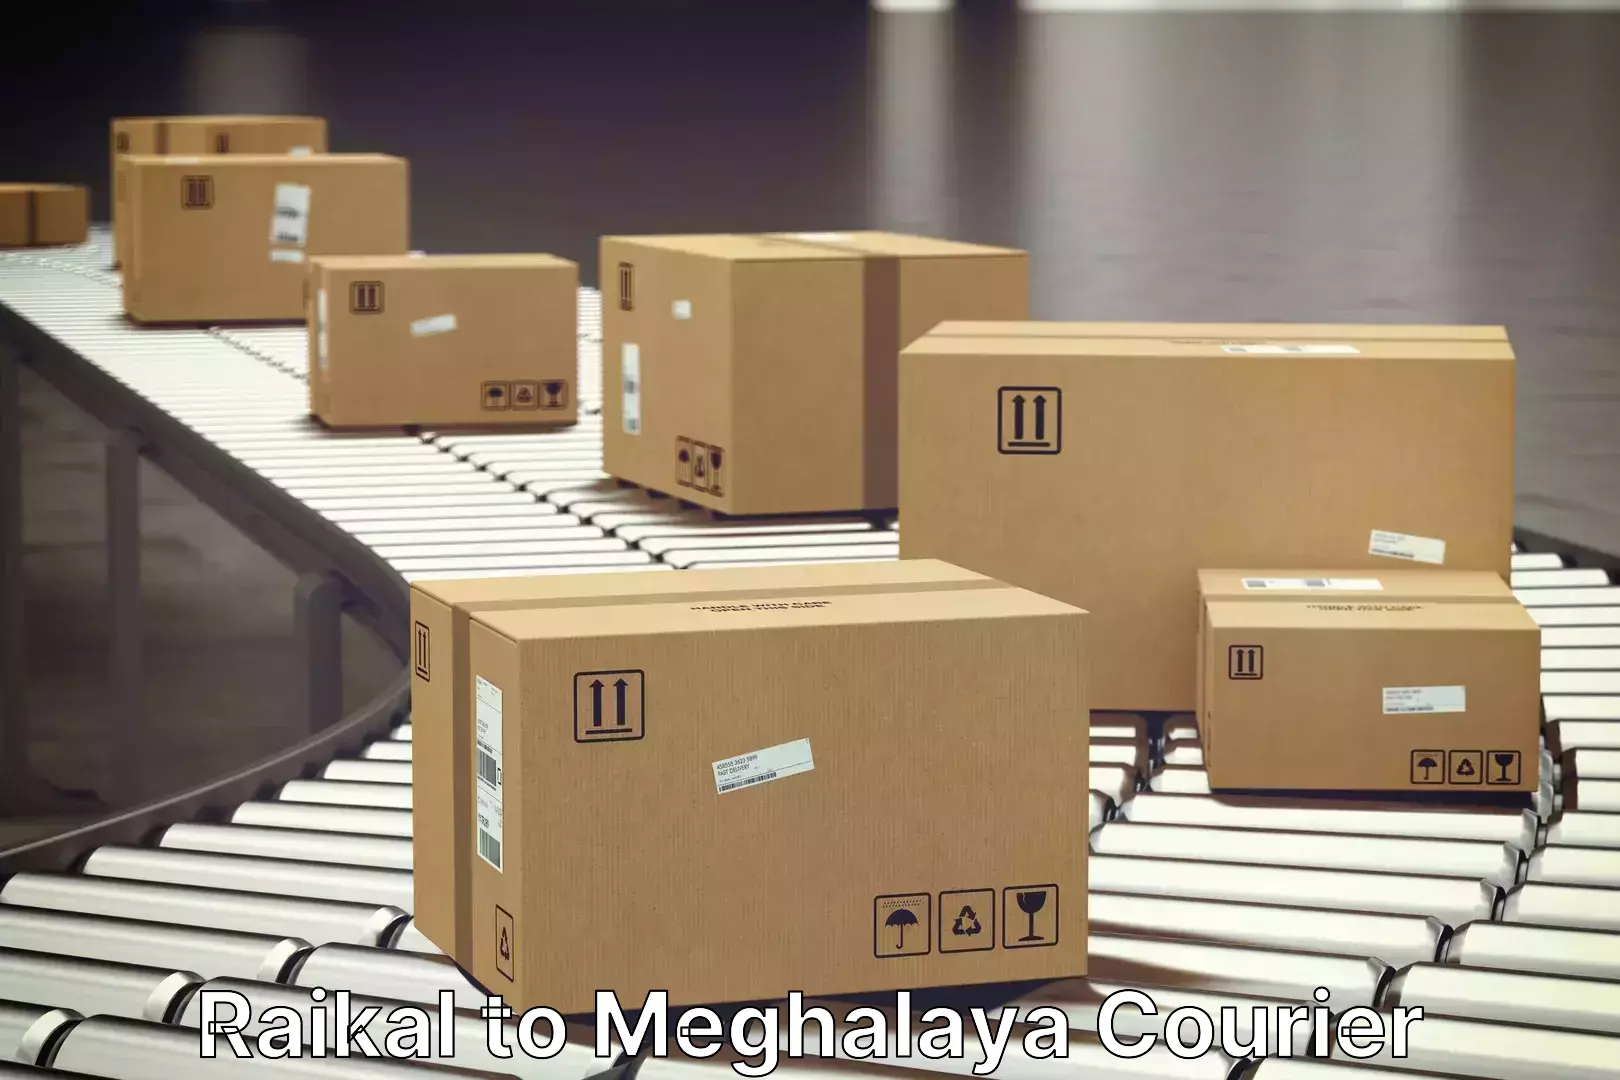 Furniture moving experts Raikal to Meghalaya